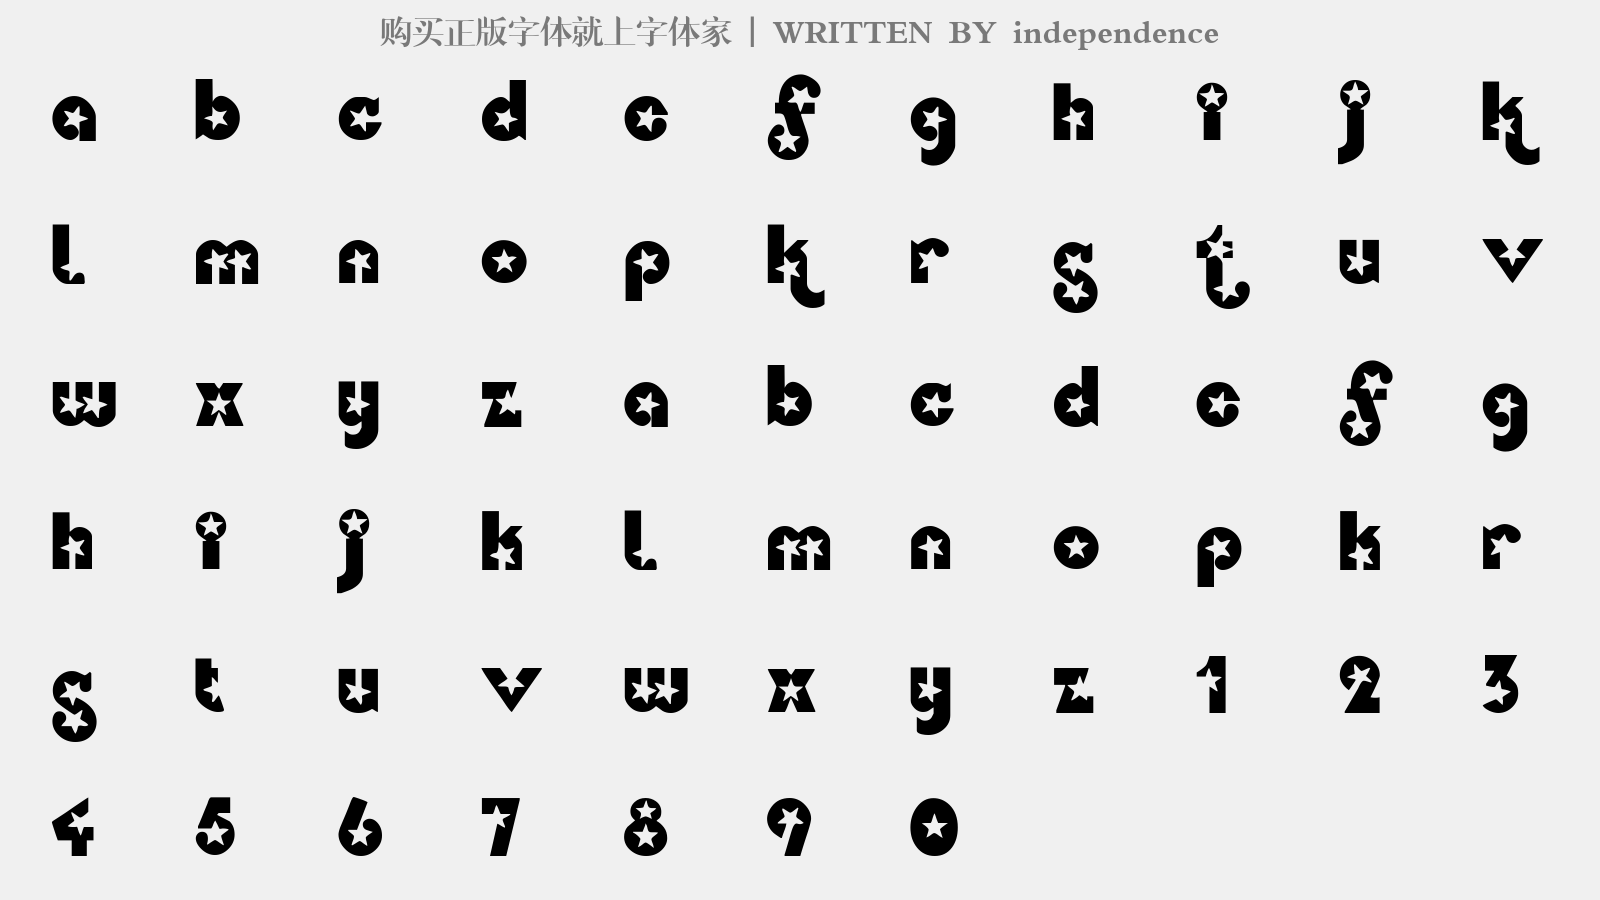 independence - 大写字母/小写字母/数字